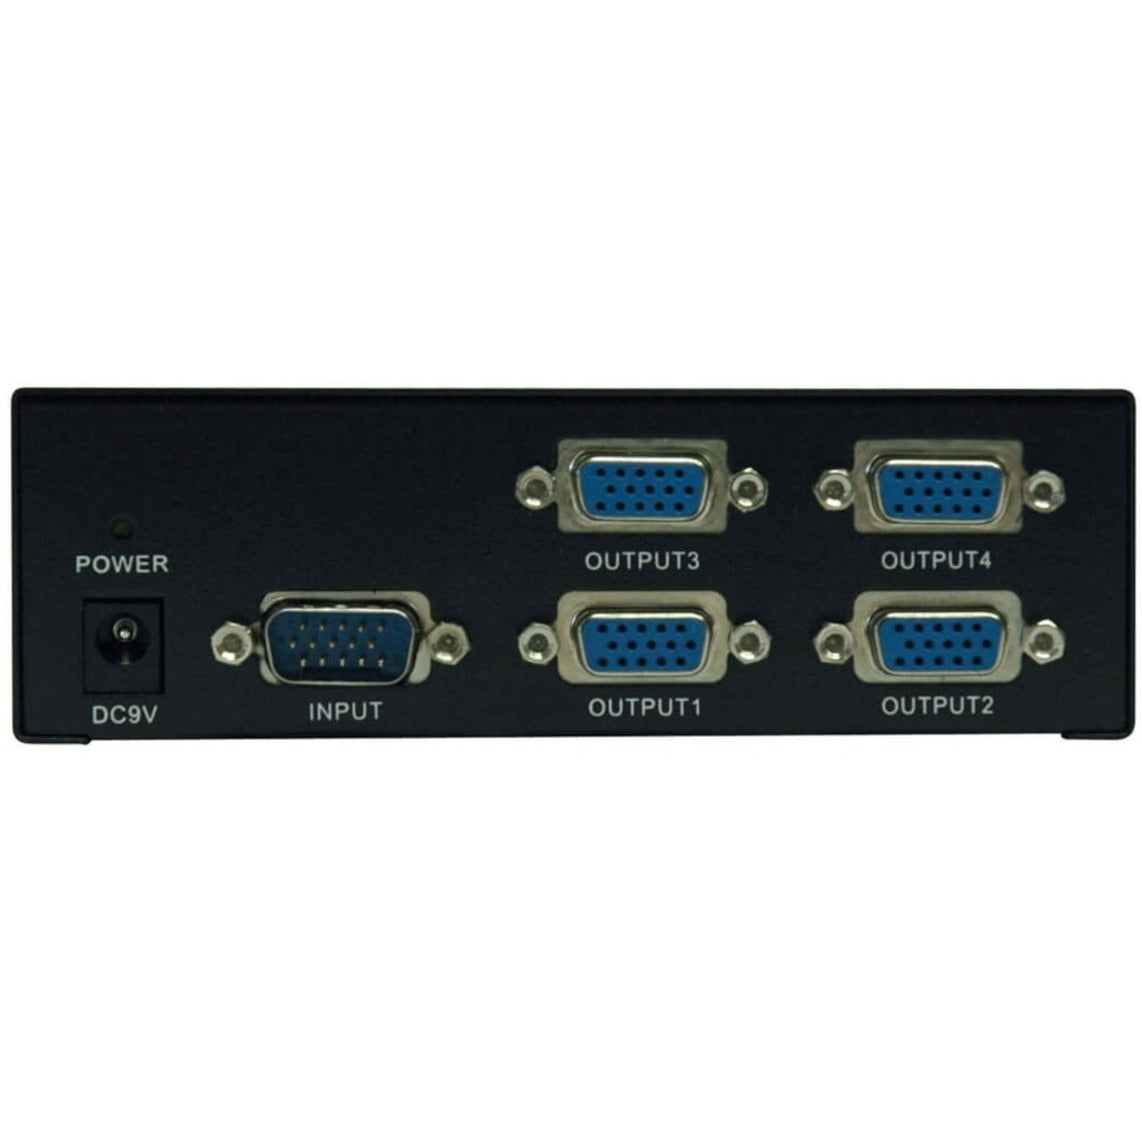 Tripp Lite B114-004-R VGA Splitter, 4-Port Video Splitter, QXGA, 350 MHz, 3-Year Warranty